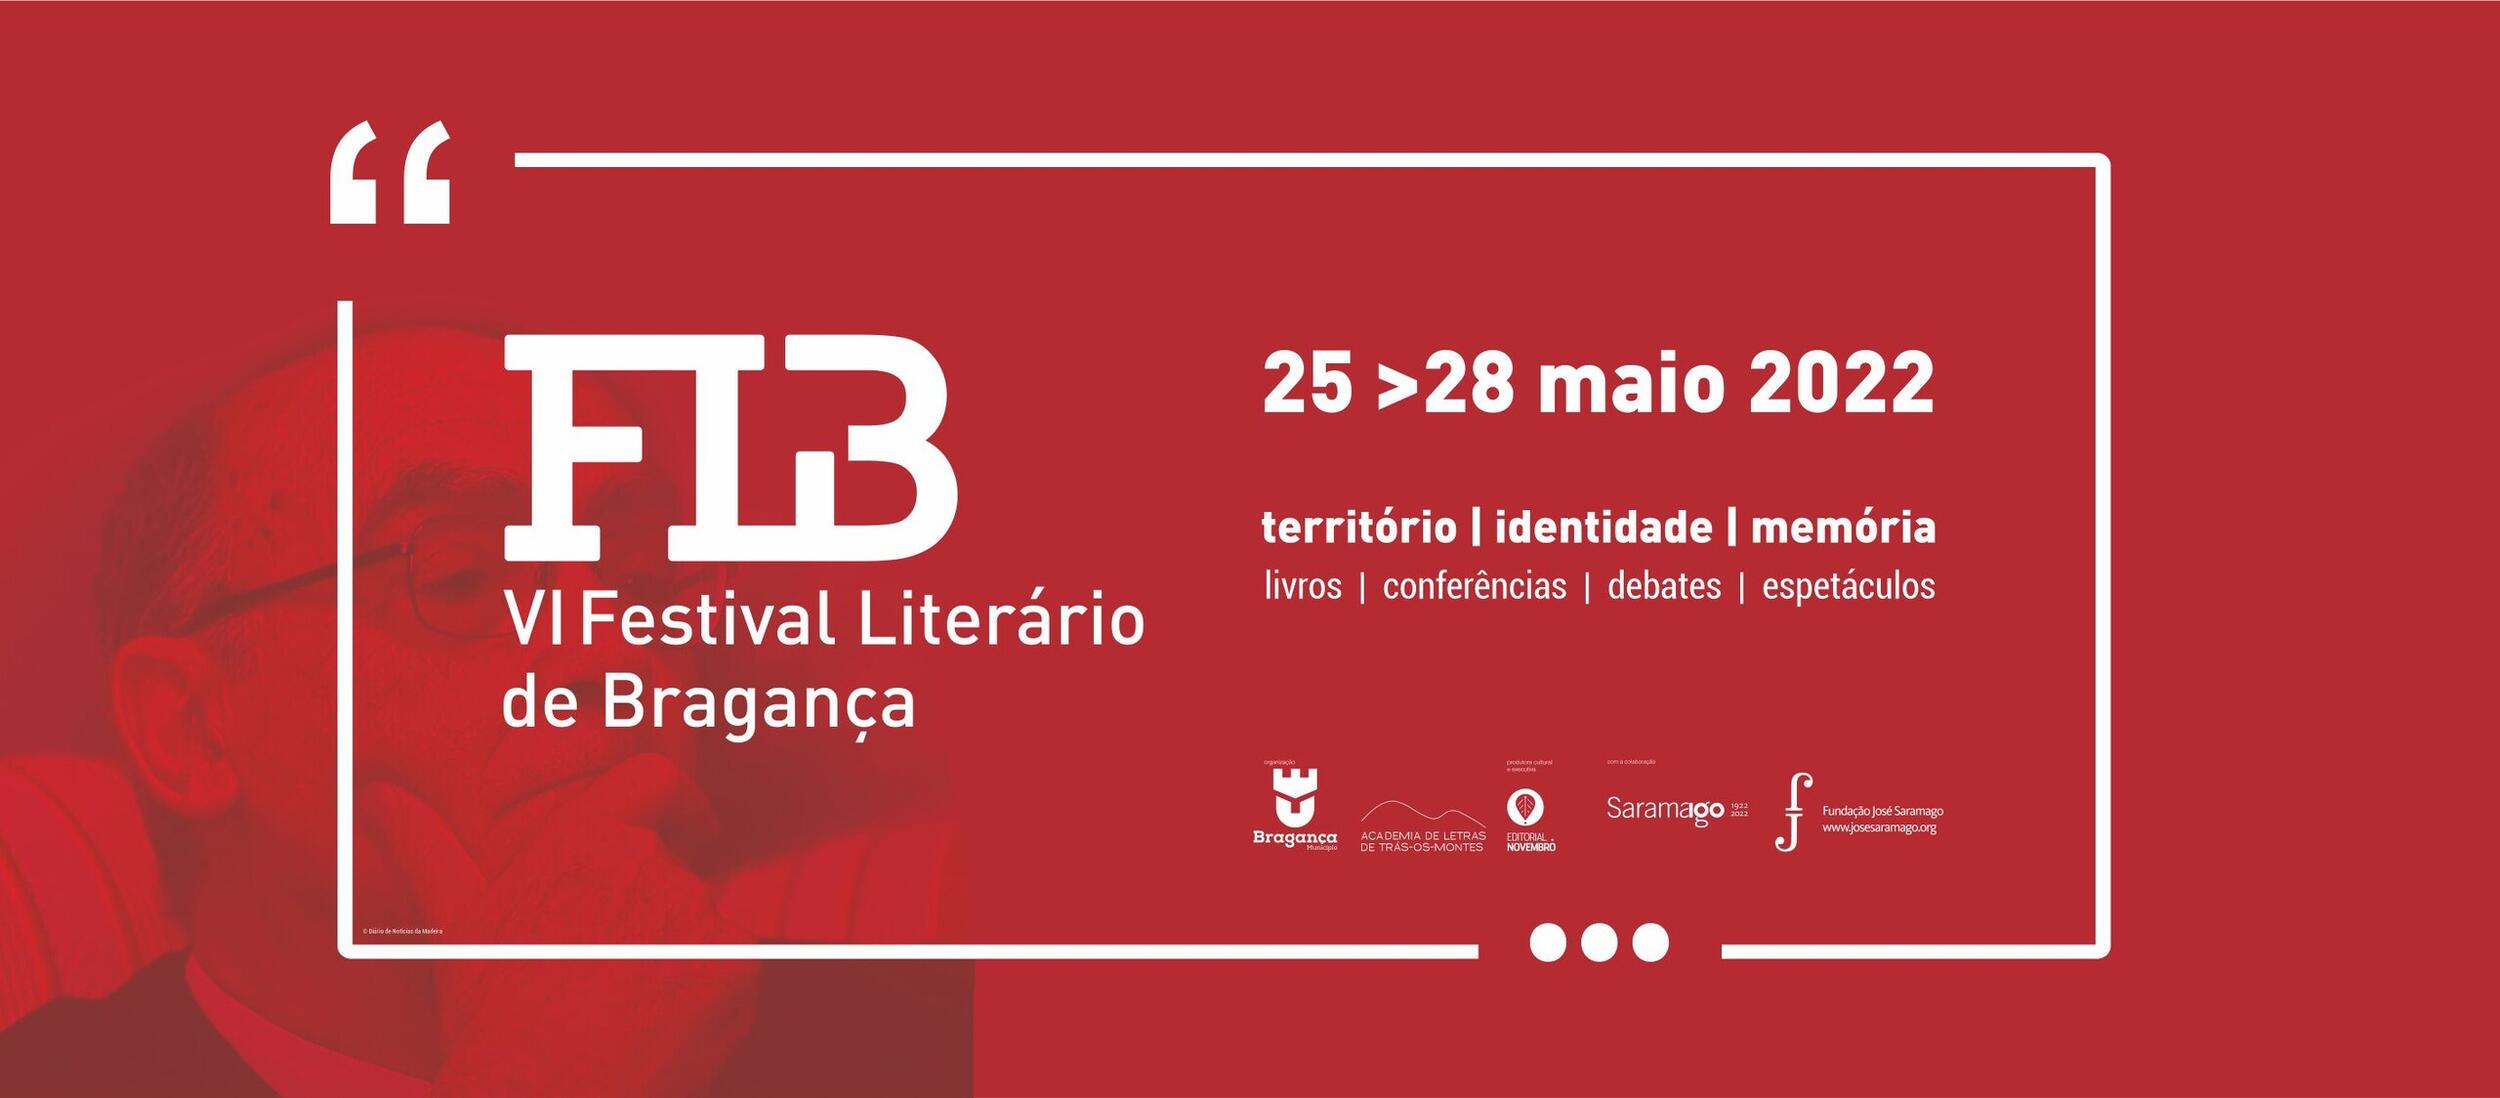 VI Festival Literário de Bragança | Resumo [VÍDEO]